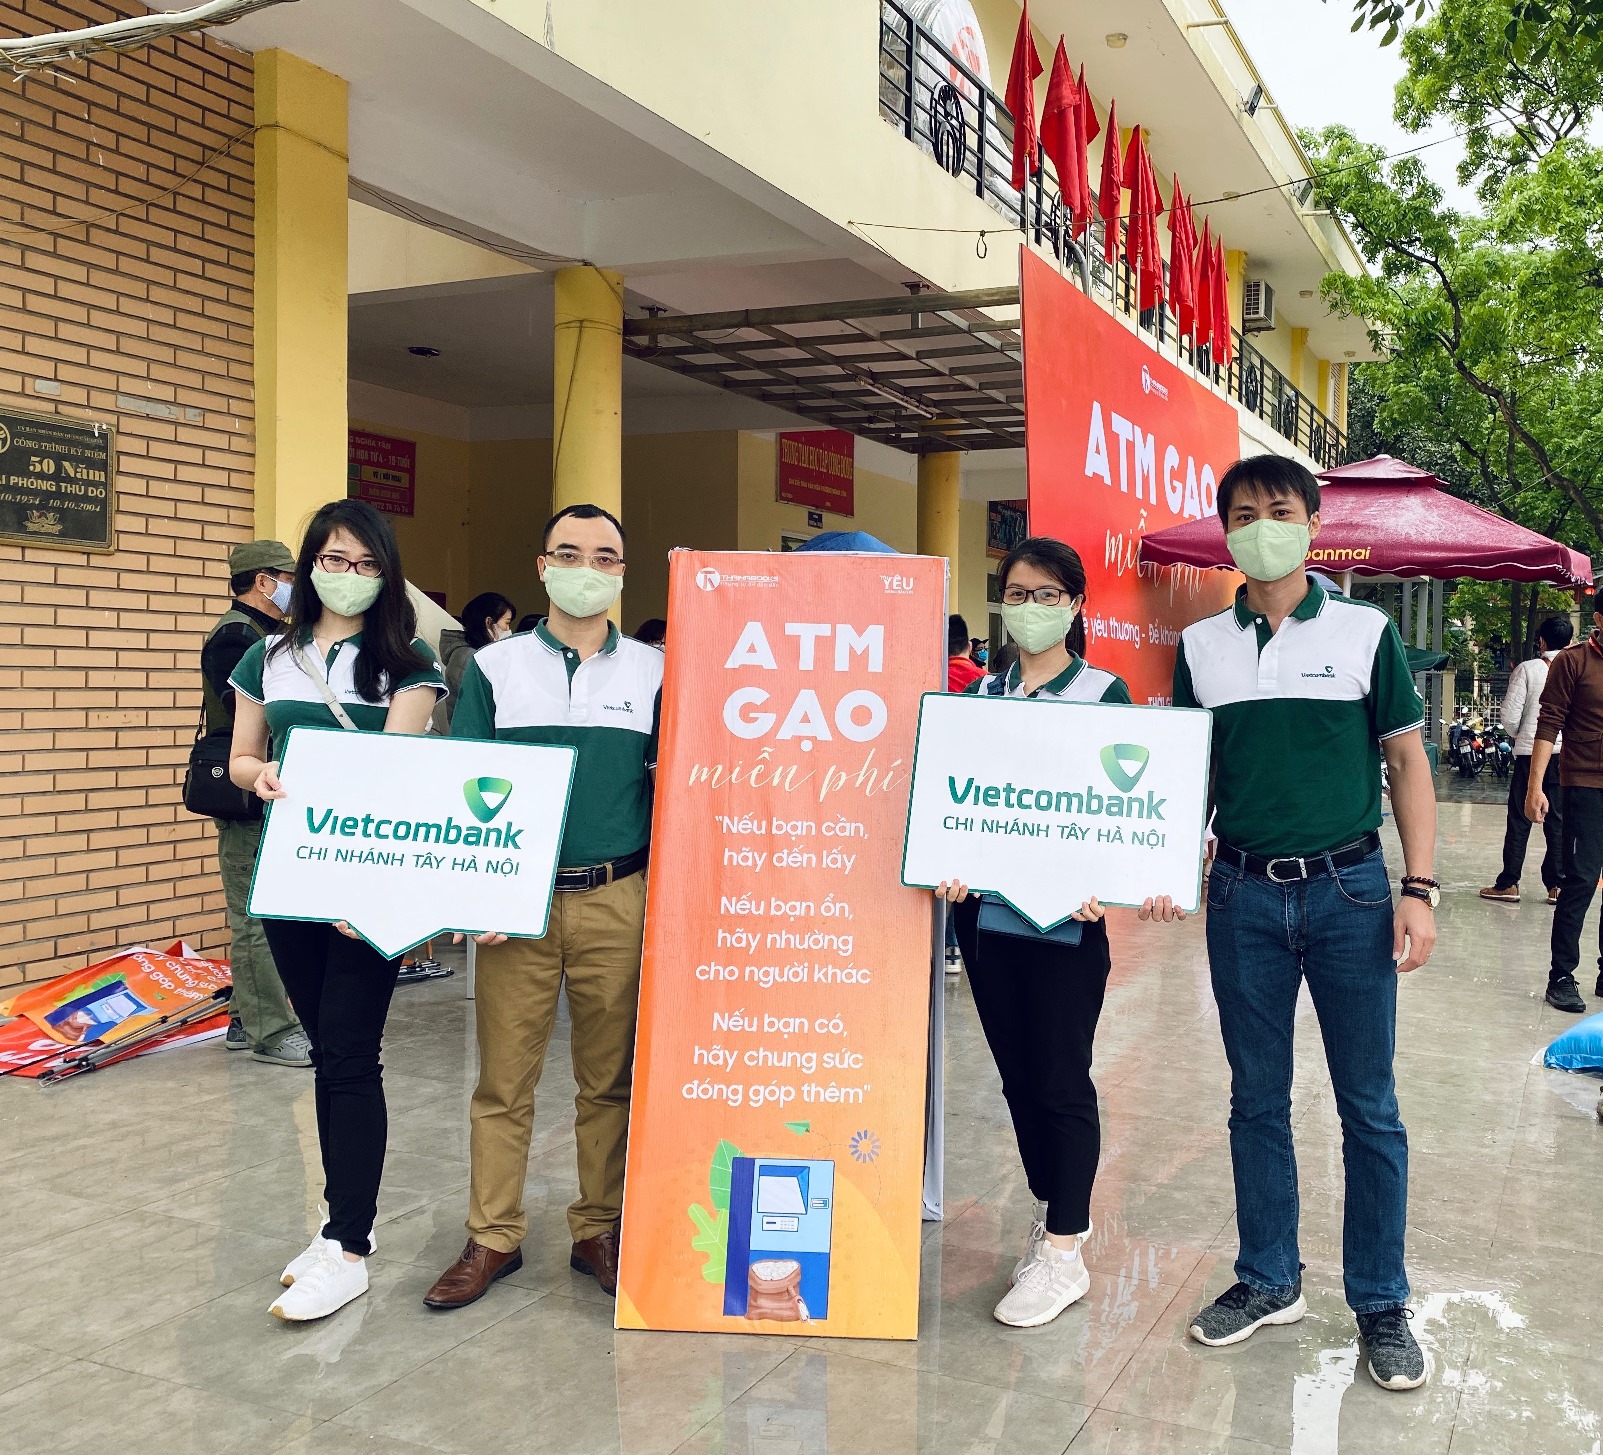 Đoàn cơ sở Vietcombank Tây Hà Nội ủng hộ gạo hỗ trợ người lao động nghèo, người dân khó khăn do ảnh hưởng bởi dịch bệnh COVID-19